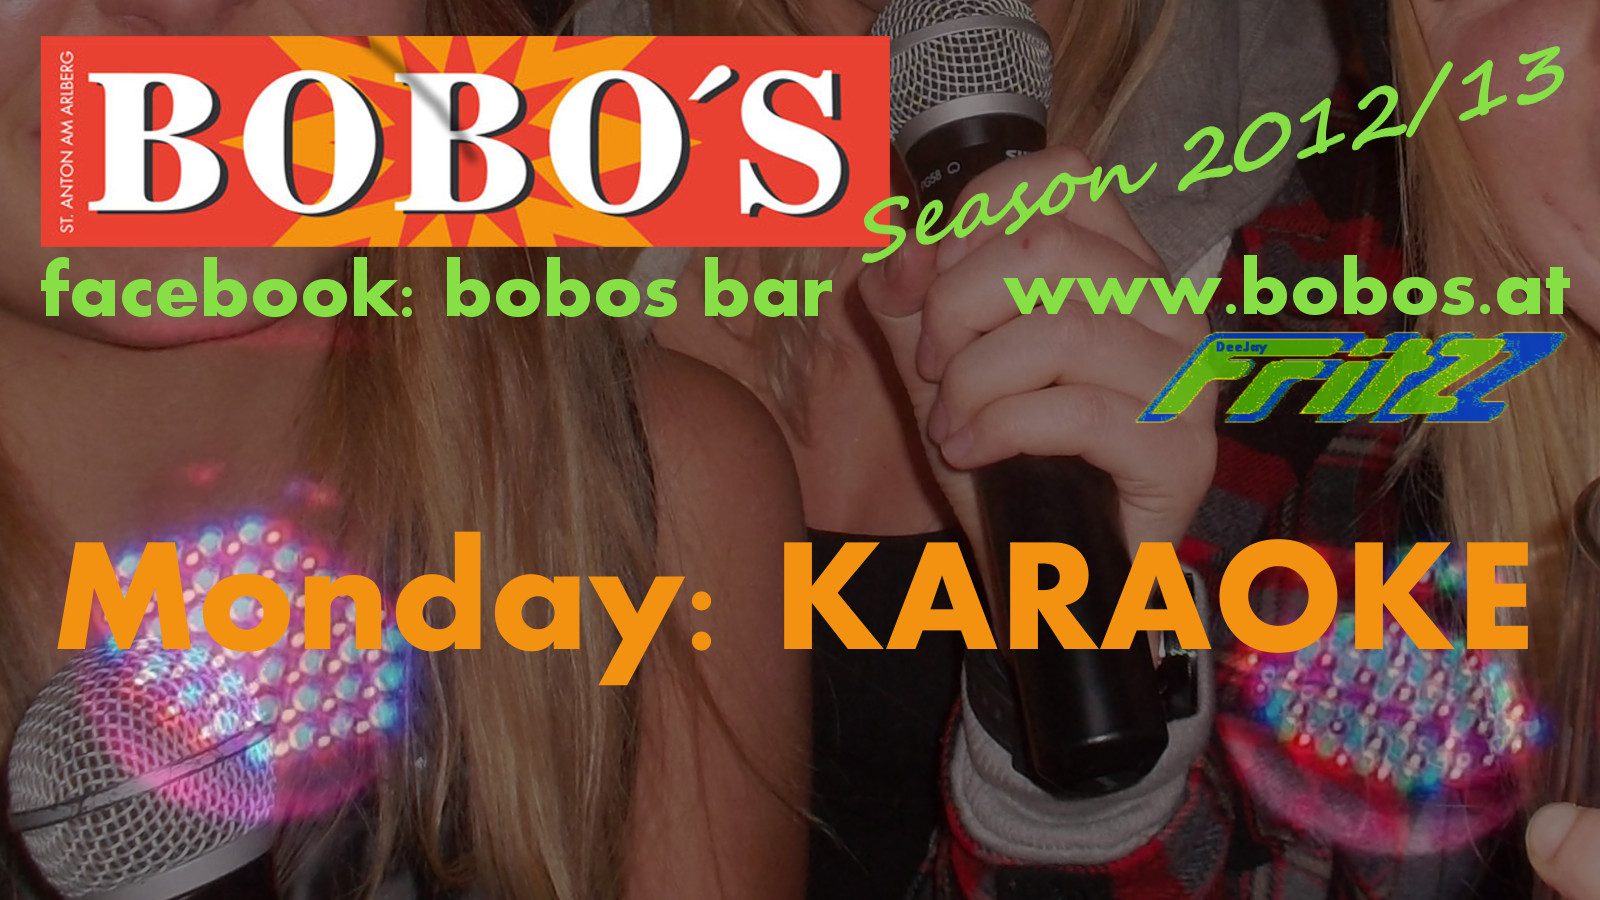 screen-bobos-karaoke-01